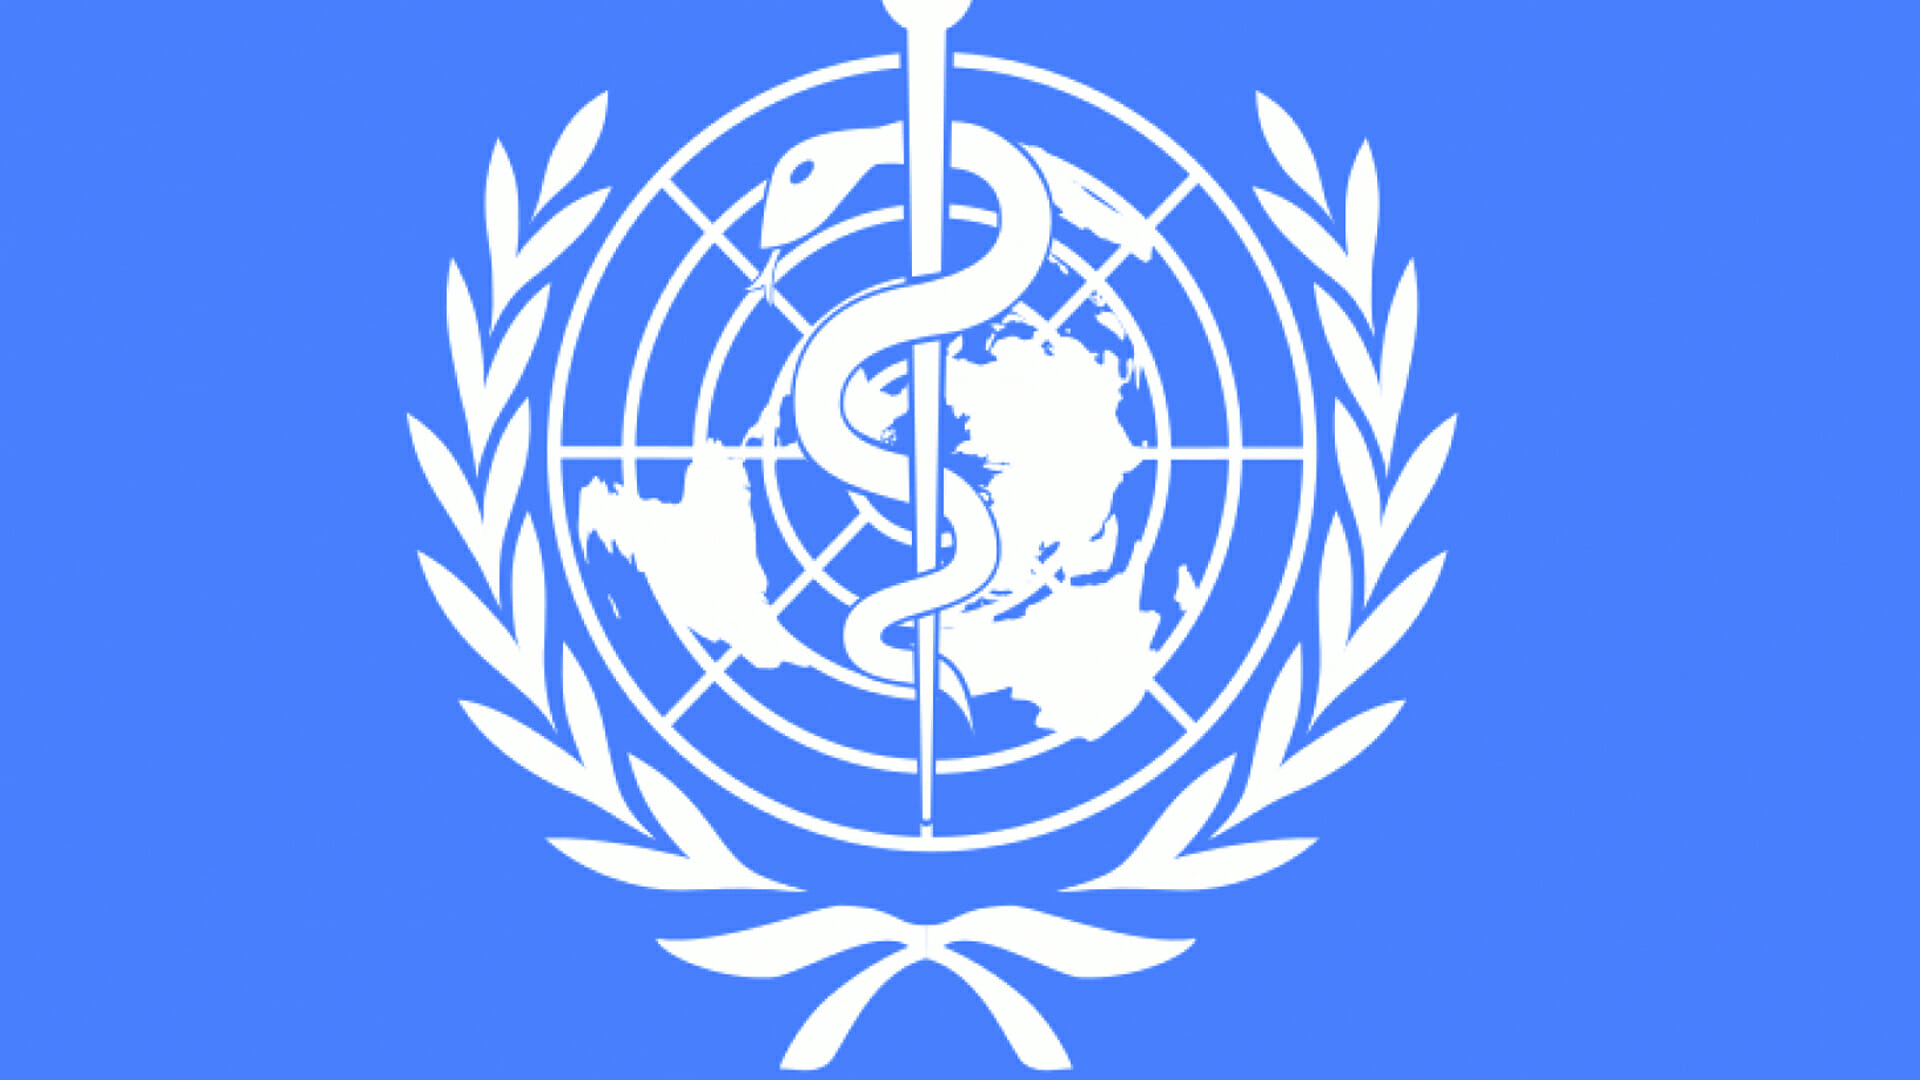 Тысячелетия оон. Всемирная организация здравоохранения. ООН И НАТО. Эмблема воз всемирной организации здравоохранения. Воз ООН.